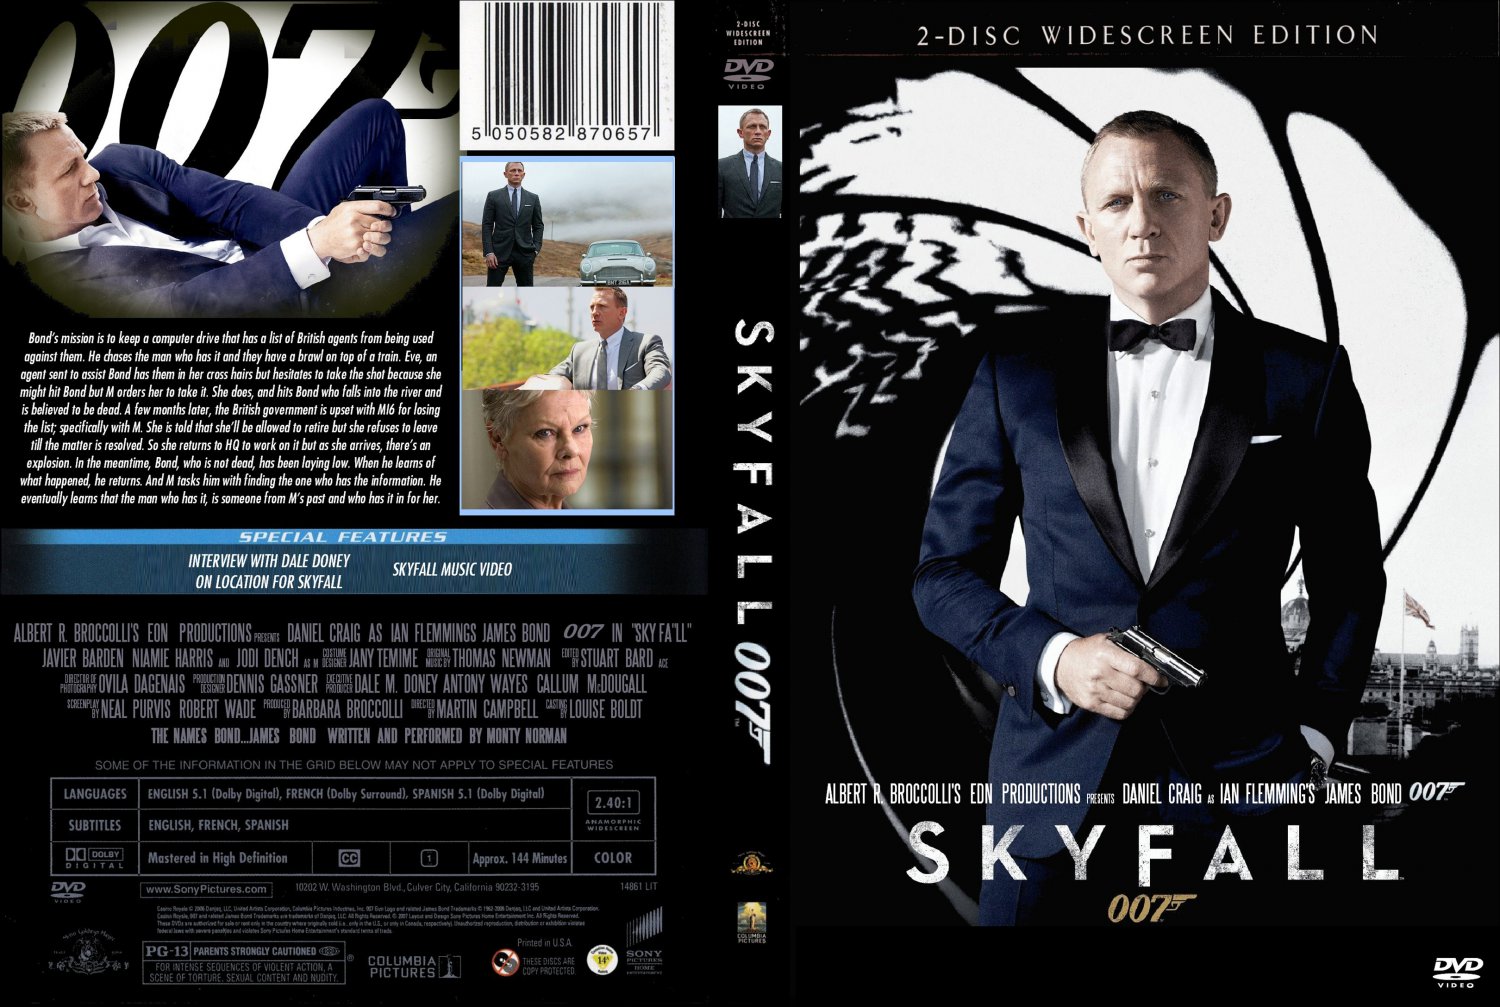 Skyfall - Movie DVD Custom Covers - Skyfall - Custom2 ...
 Skyfall Dvd Cover